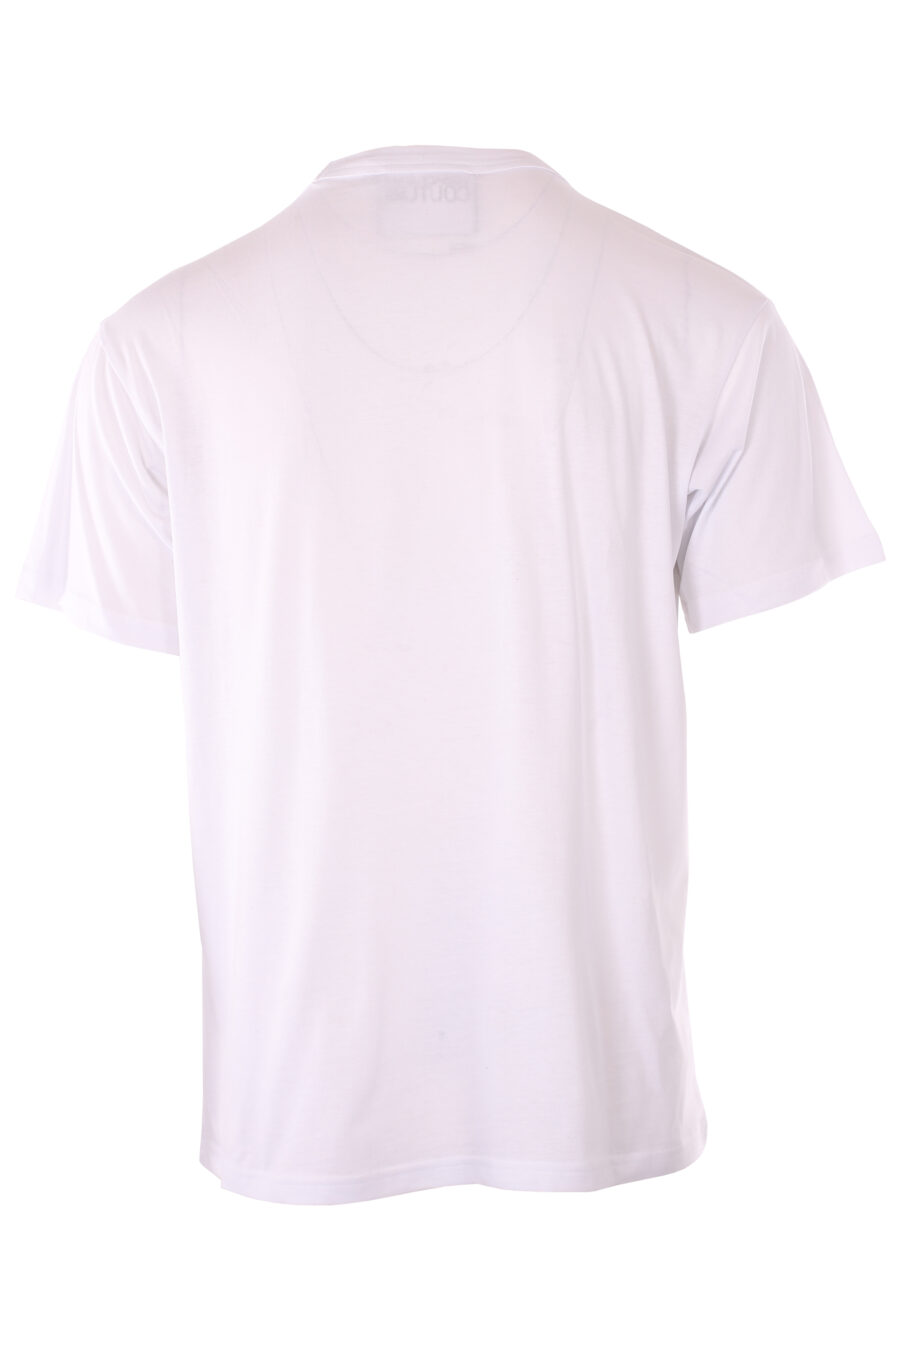 Camiseta blanca con logo negro en diagonal - IMG 6564